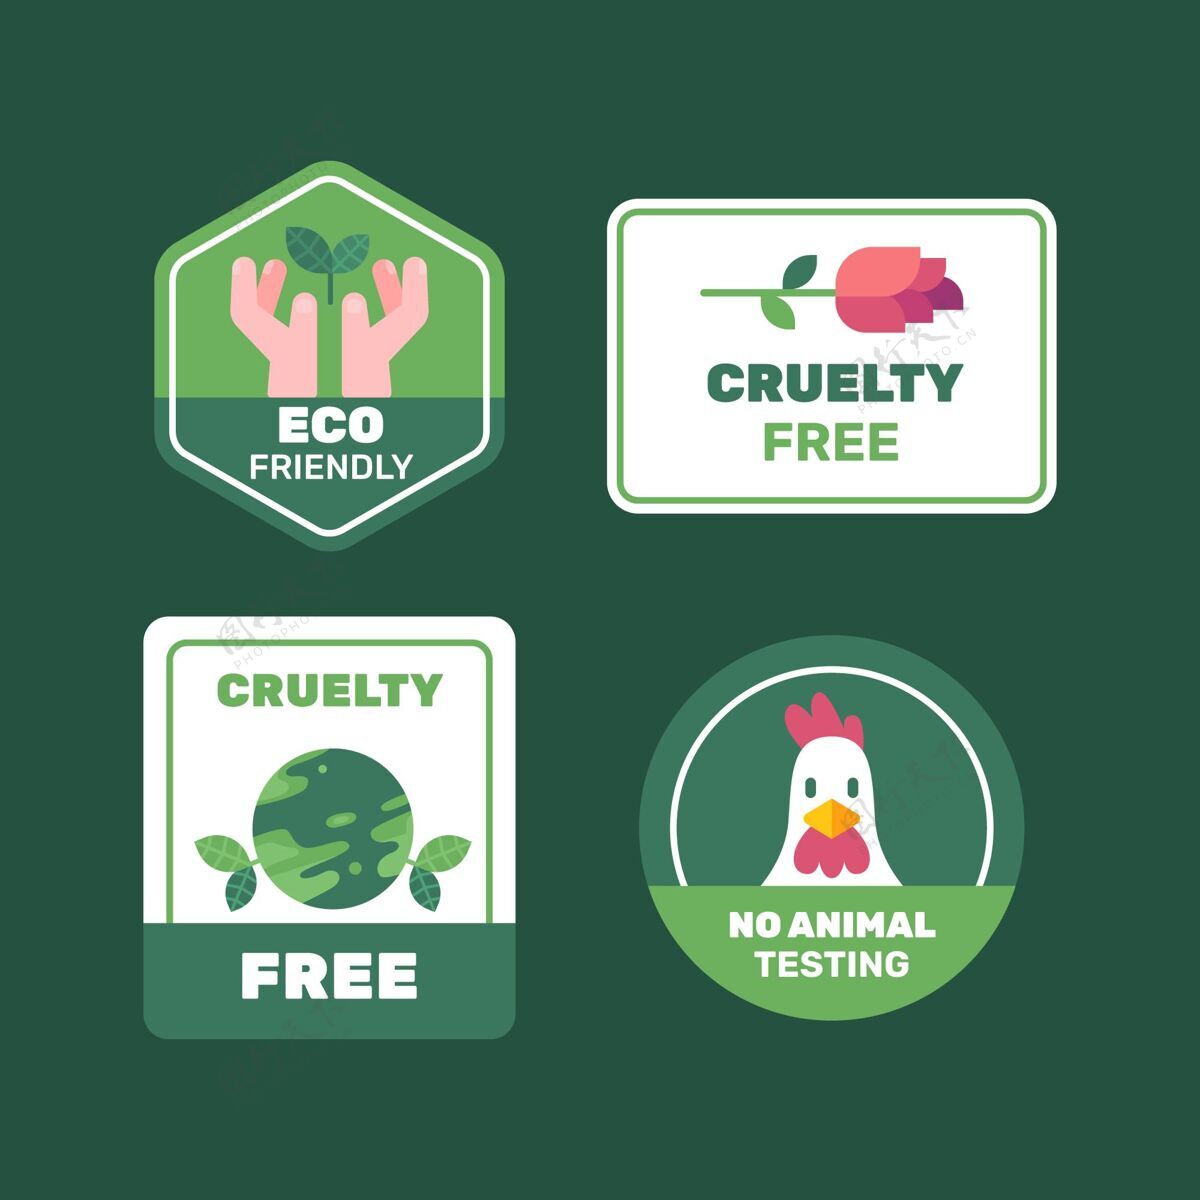 平面平面设计残酷免费徽章收集环保生物徽章